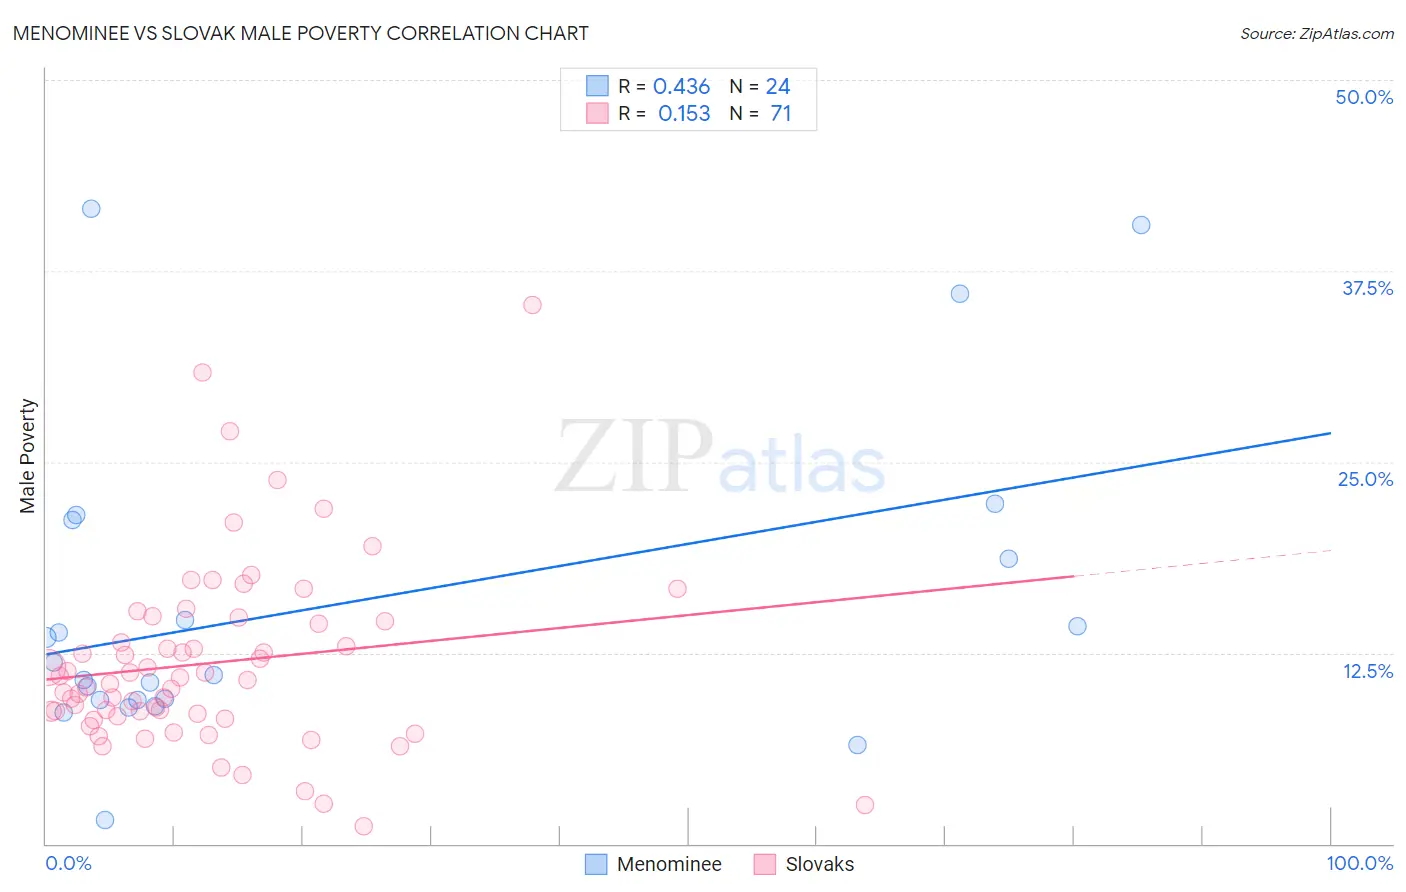 Menominee vs Slovak Male Poverty